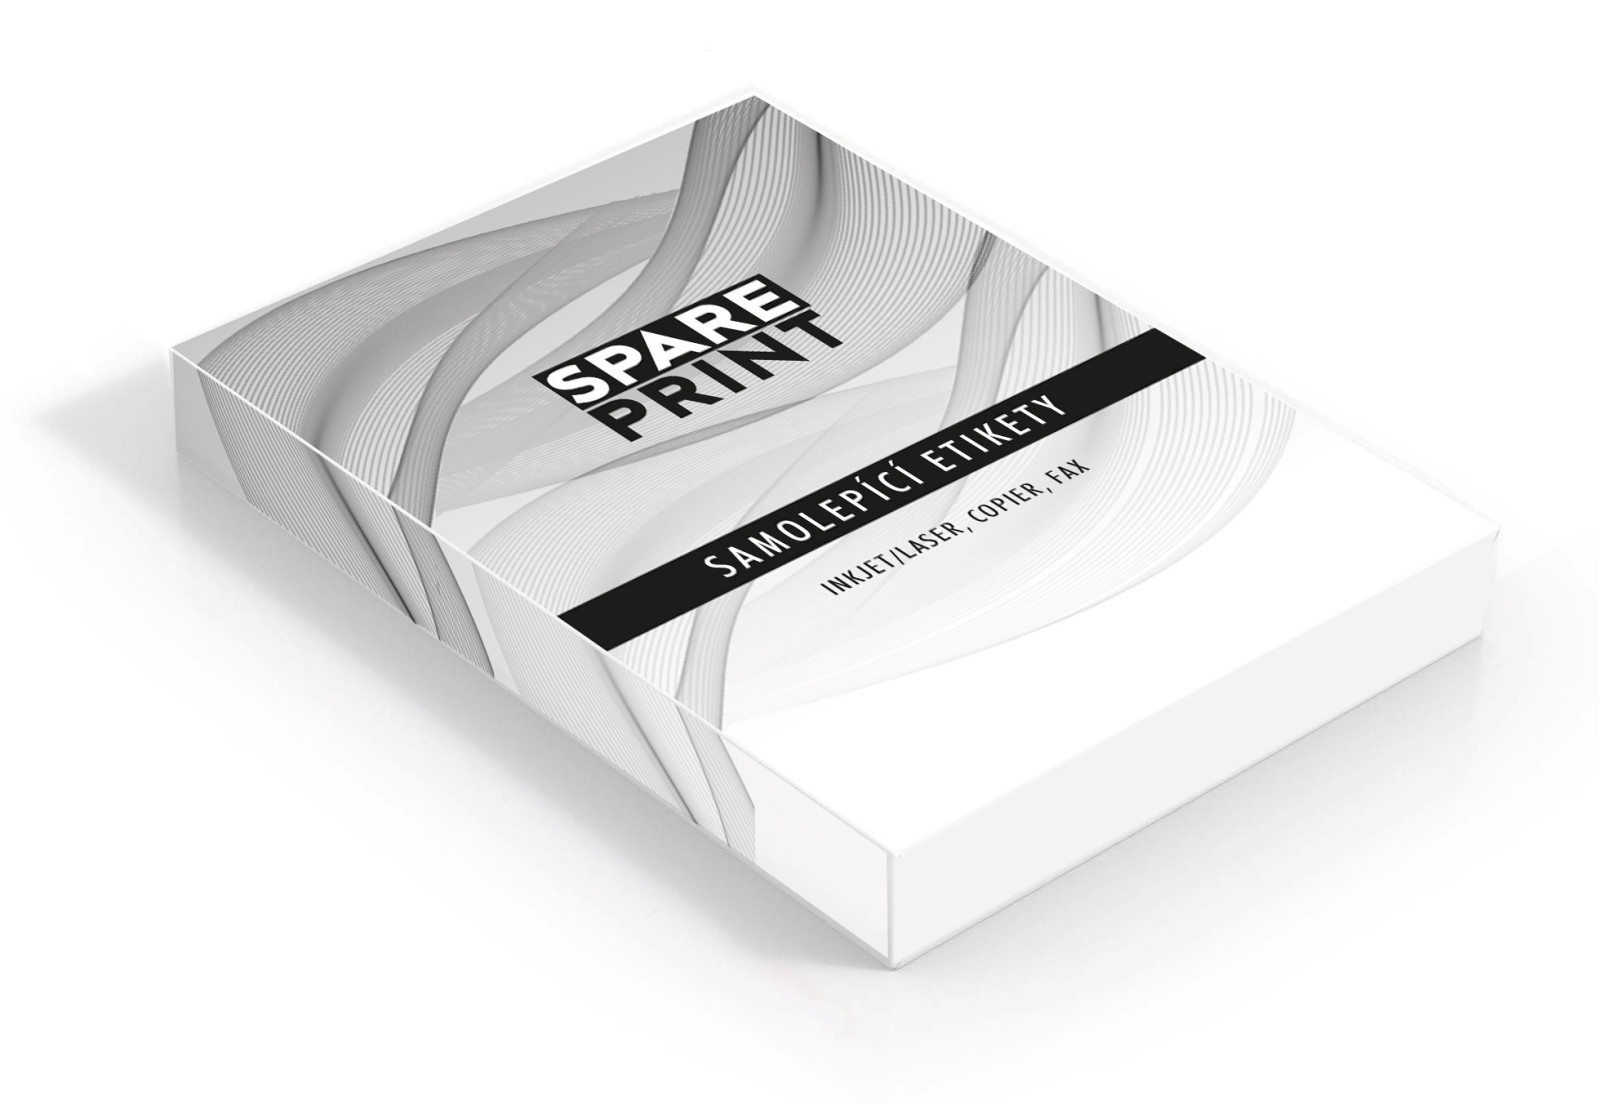 SPARE PRINT PREMIUM Samolepicí etikety bílé, 100 archů A4 v krabici (1arch / 1x etiketa 210x297mm)